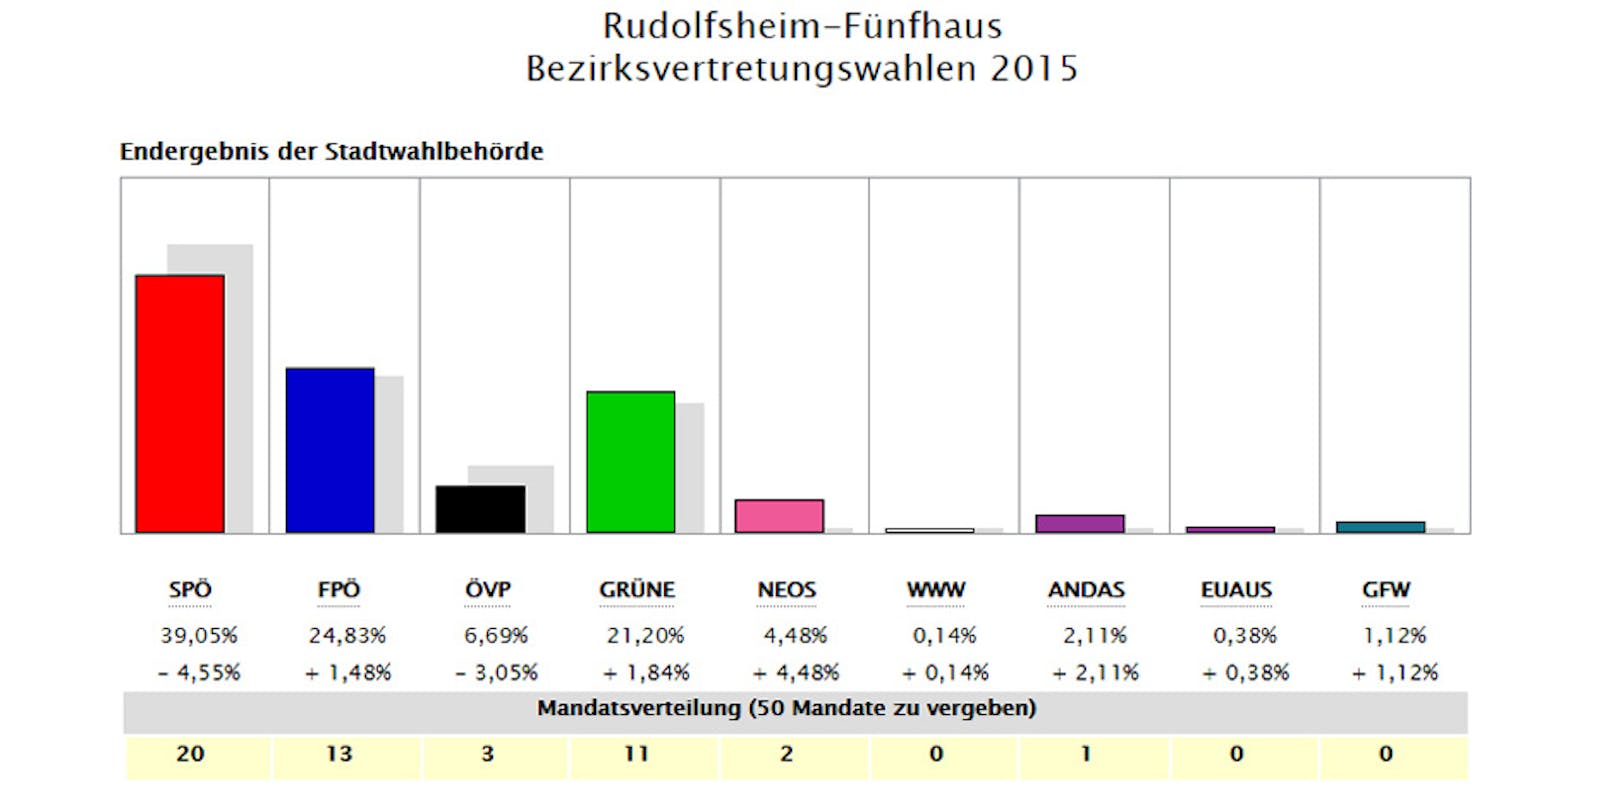 Das Ergebnis in Rudolfsheim-Fünfhaus 2015